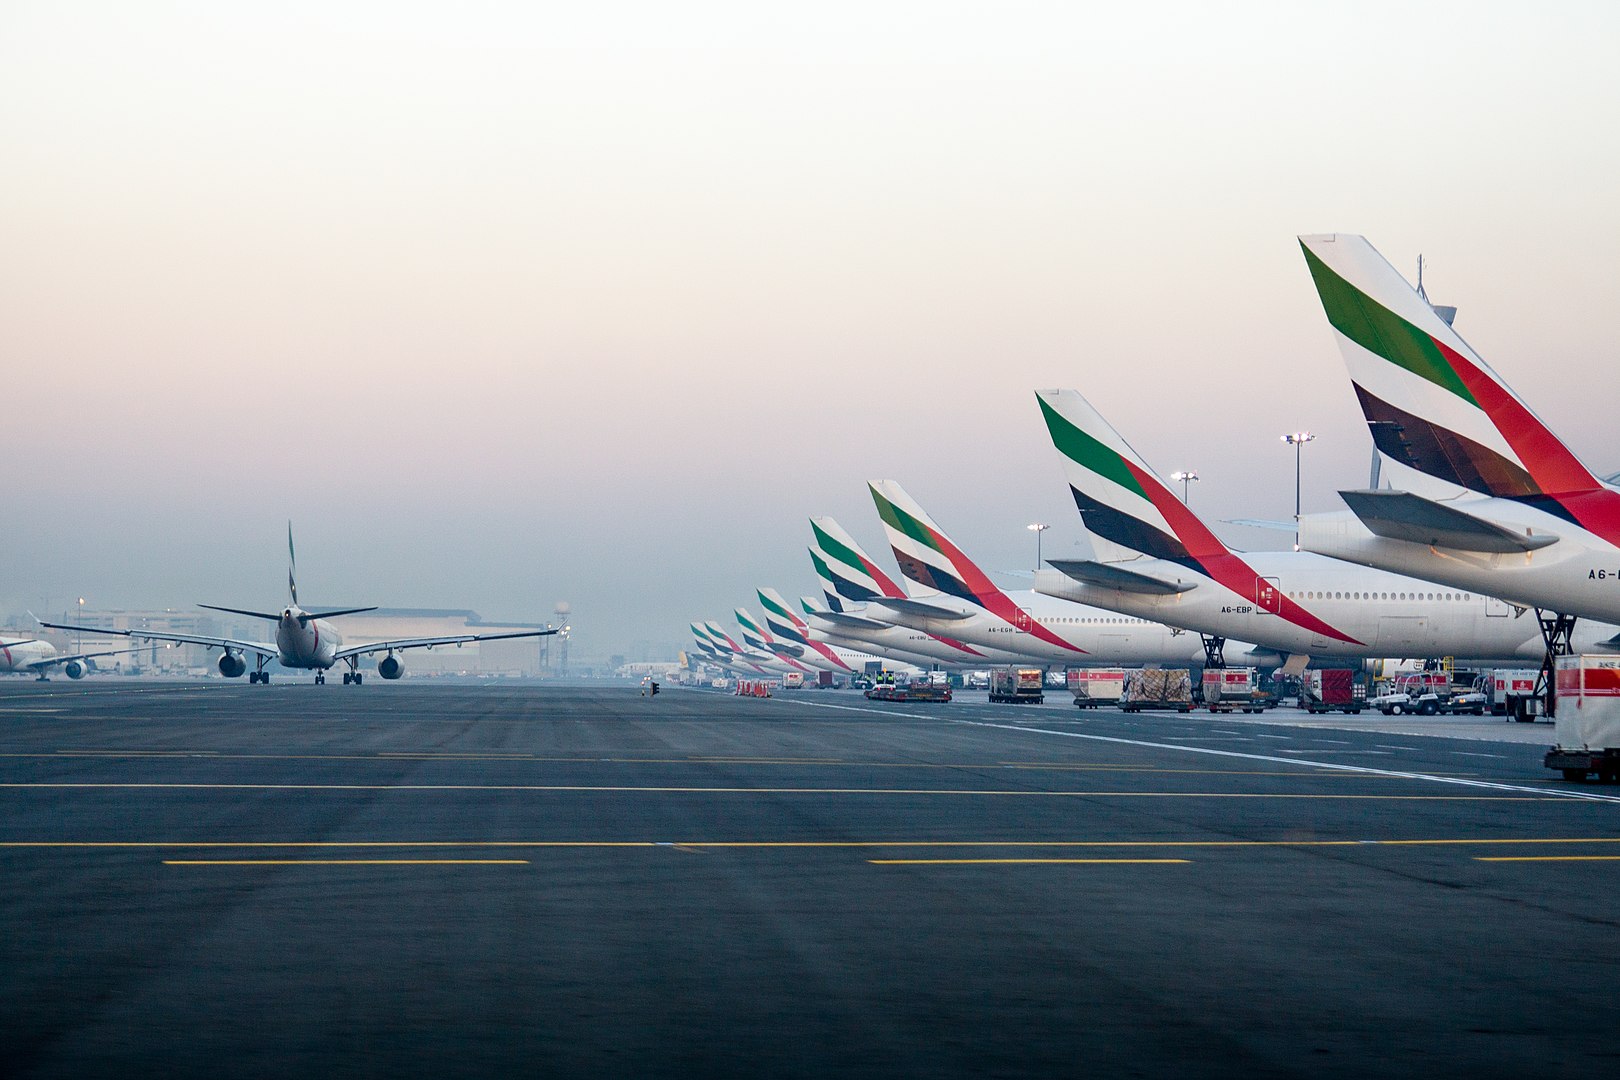 Emirates Flight